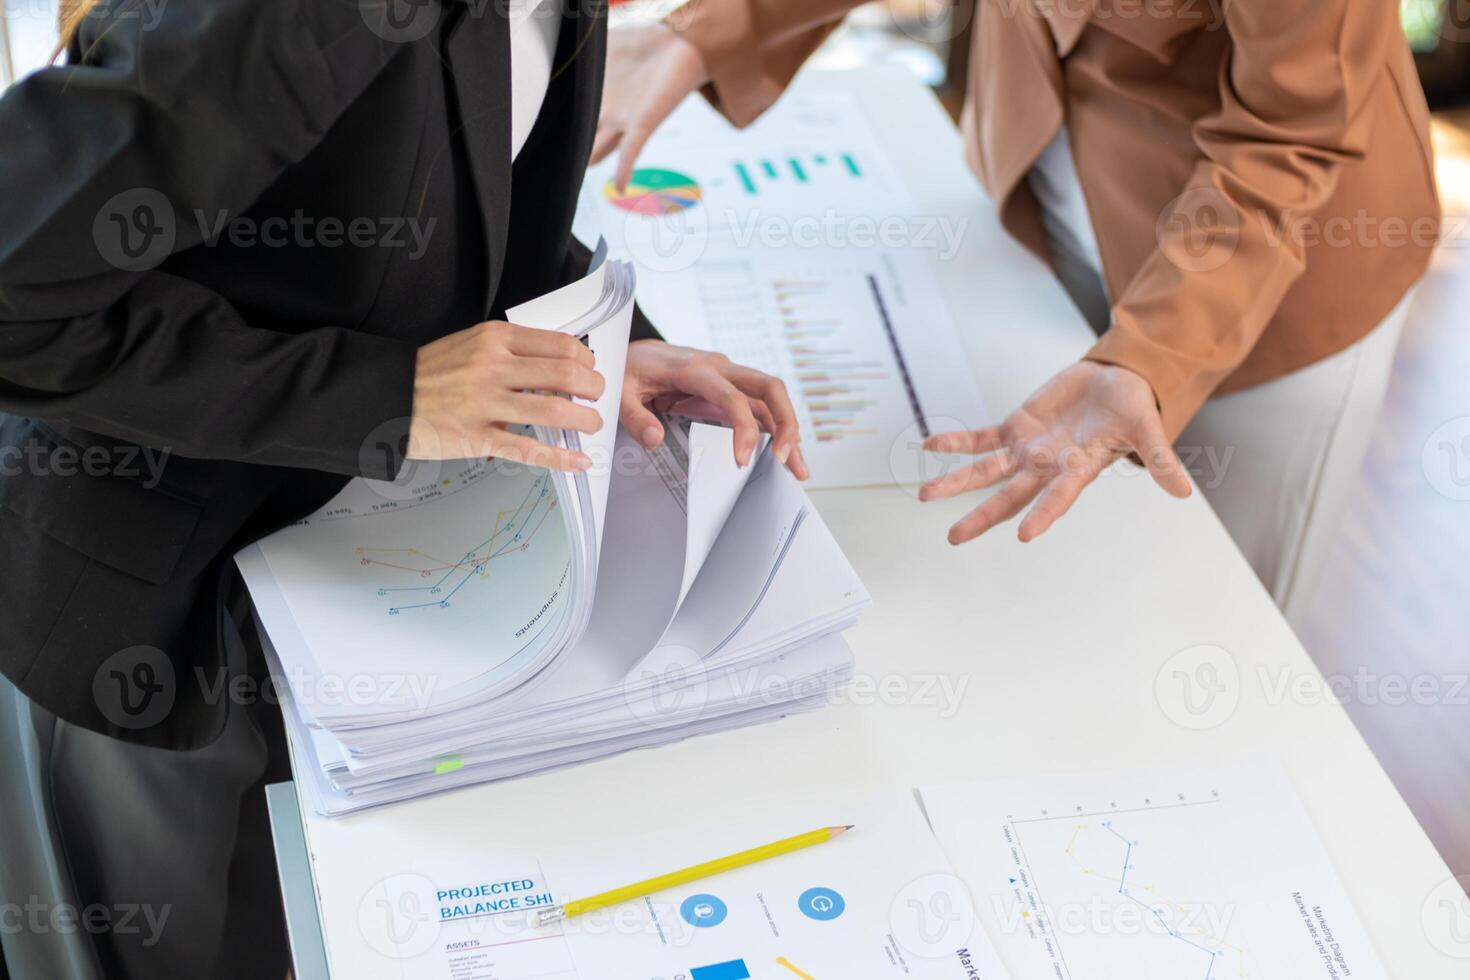 en ung sekreterare mottar en lugg av dokument till hitta Viktig information för de företag chef till använda sig av i en möte. de begrepp av upptäckt Viktig dokument från pålar av överlappande dokument foto